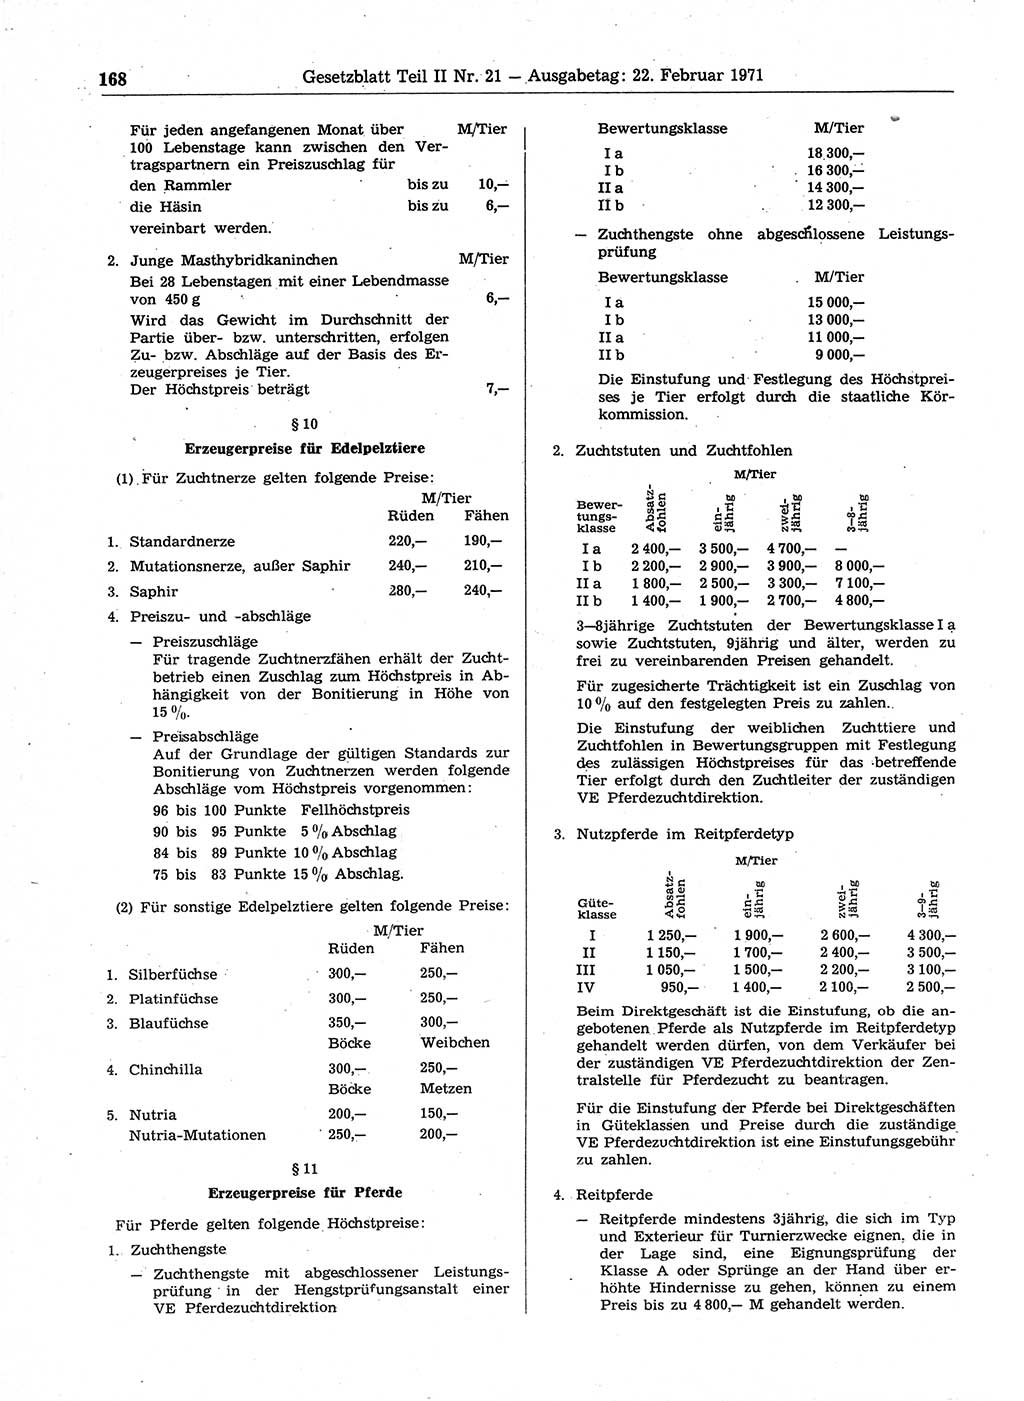 Gesetzblatt (GBl.) der Deutschen Demokratischen Republik (DDR) Teil ⅠⅠ 1971, Seite 168 (GBl. DDR ⅠⅠ 1971, S. 168)